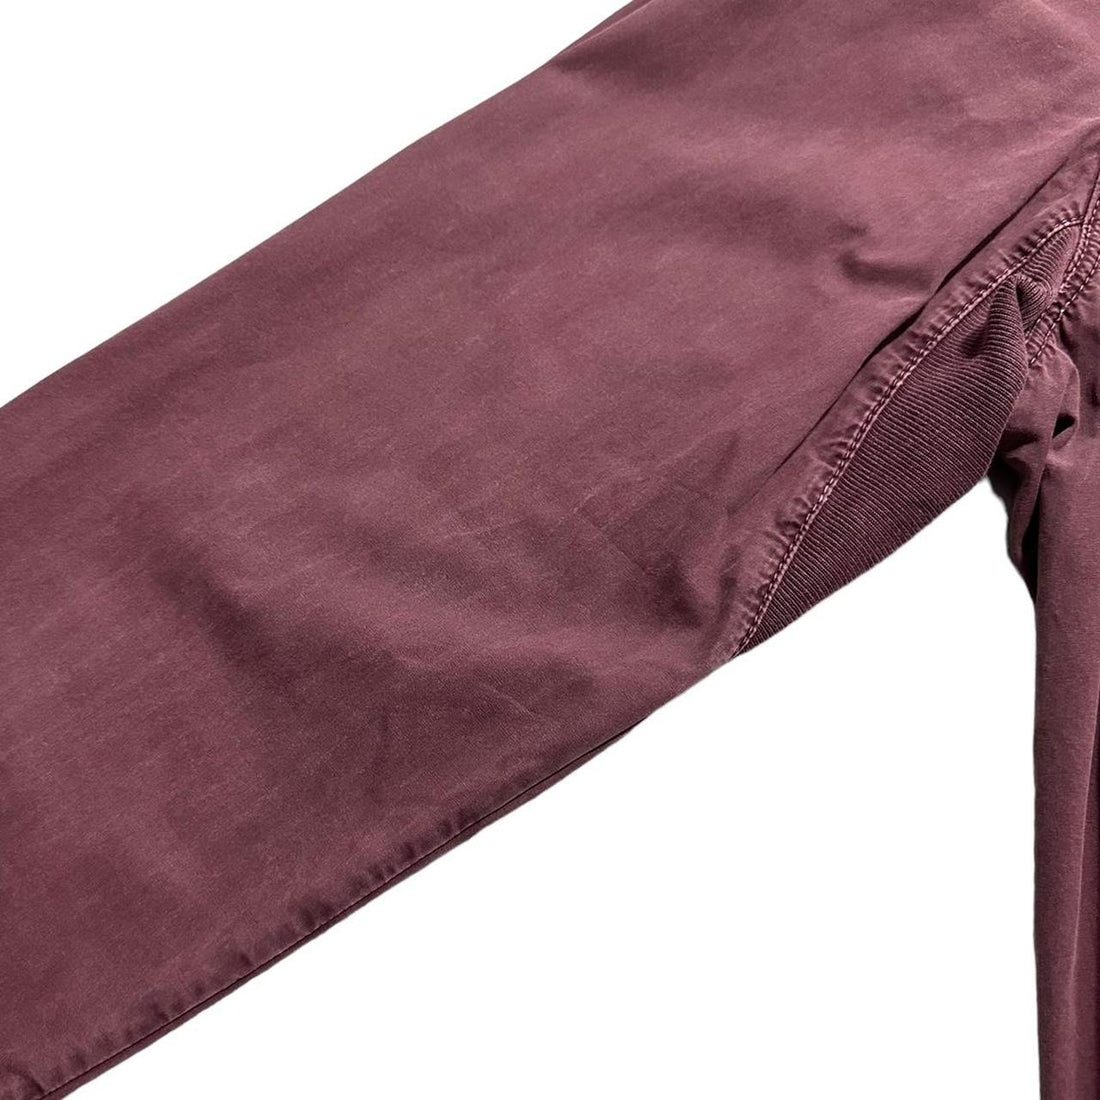 Stone Island burgundy side pocket overshirt